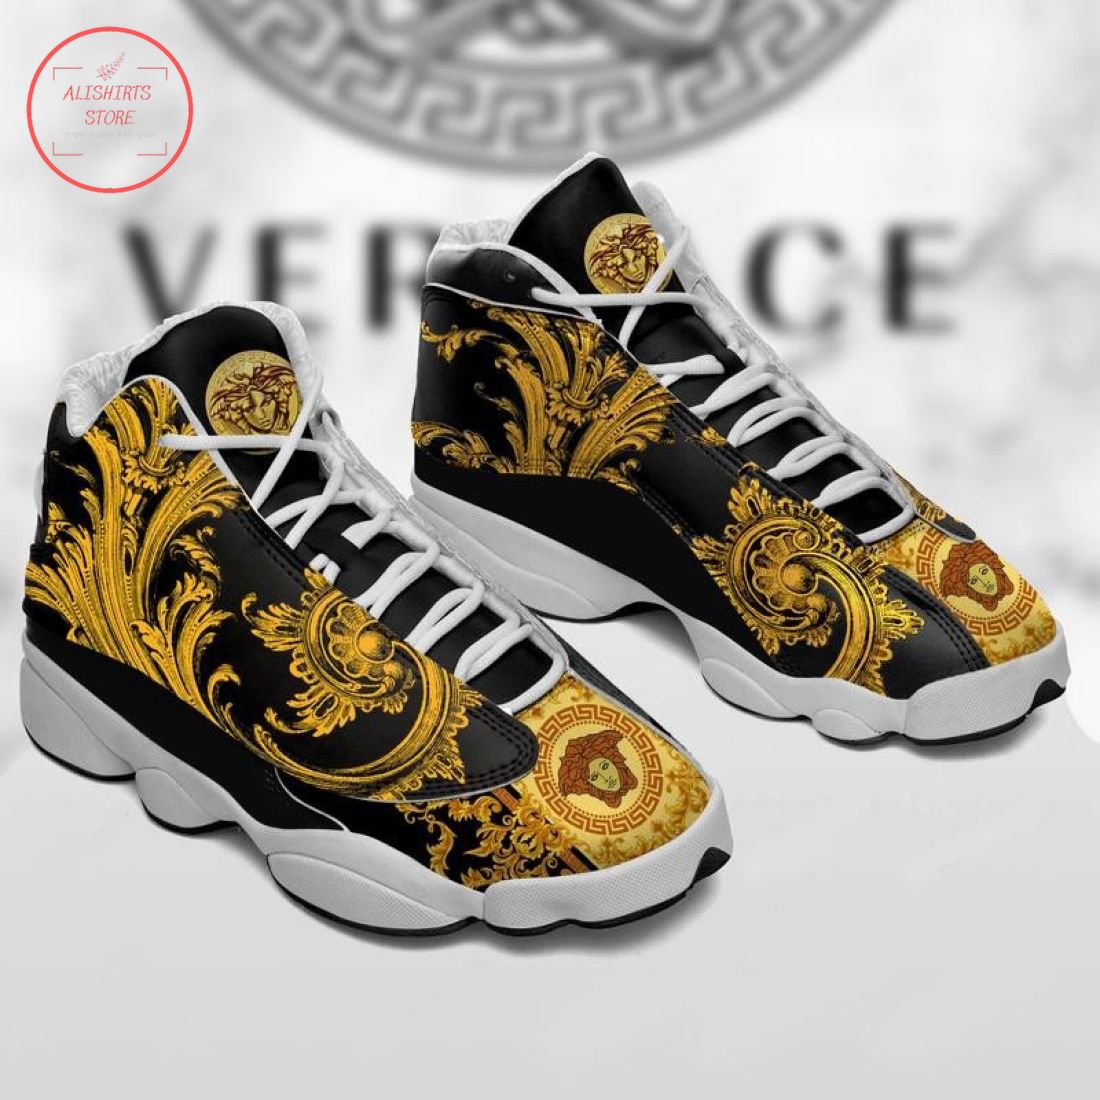 Versace Luxury Gold Black Air Jordan 13 Sneaker